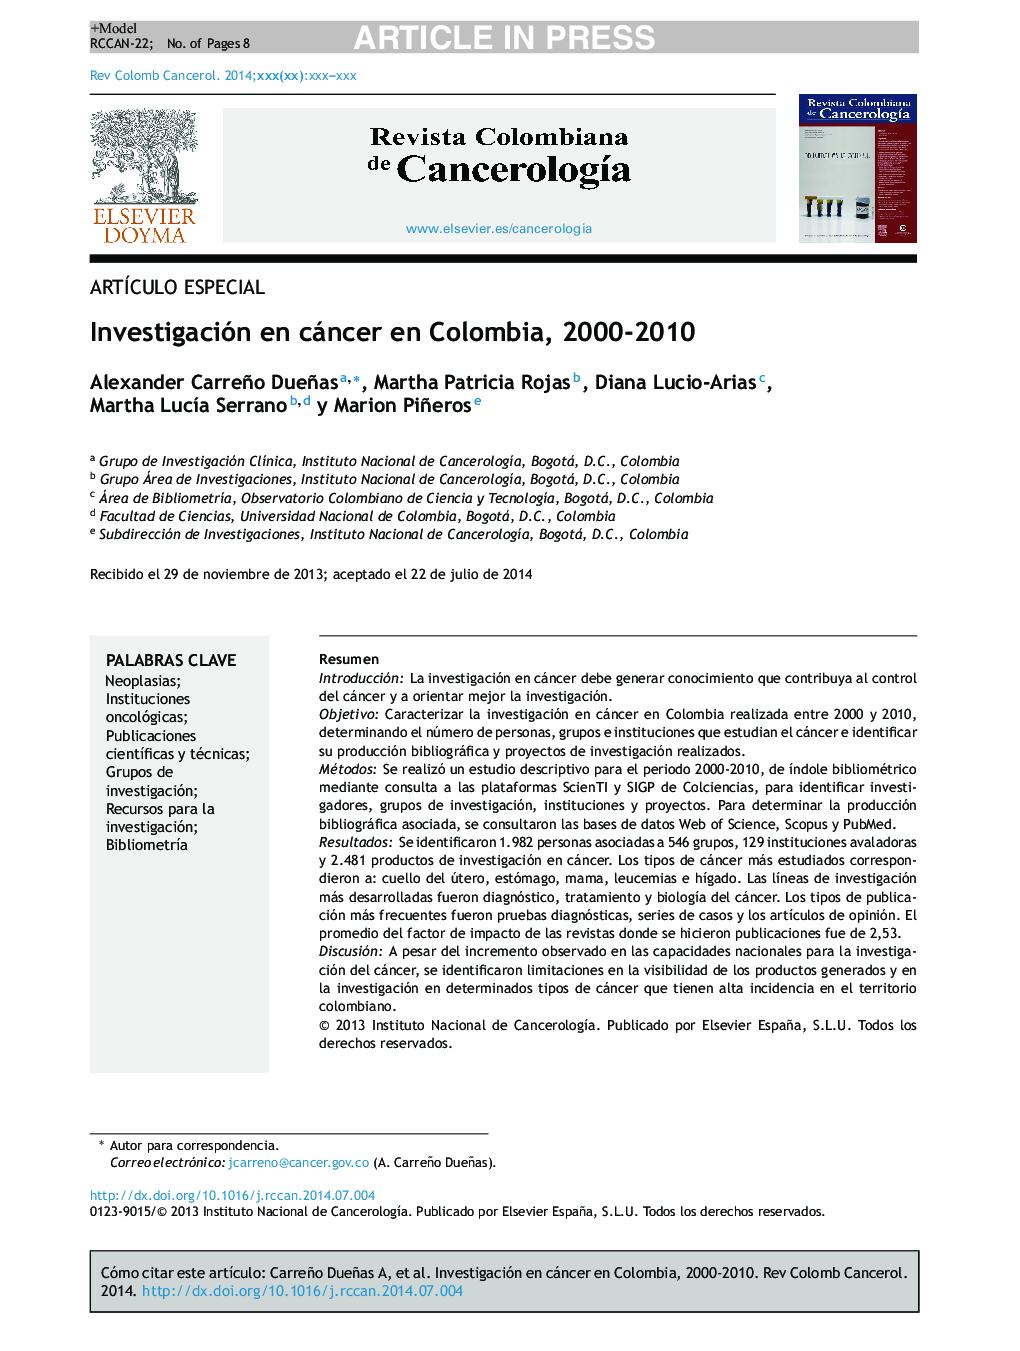 Investigación en cáncer en Colombia, 2000-2010